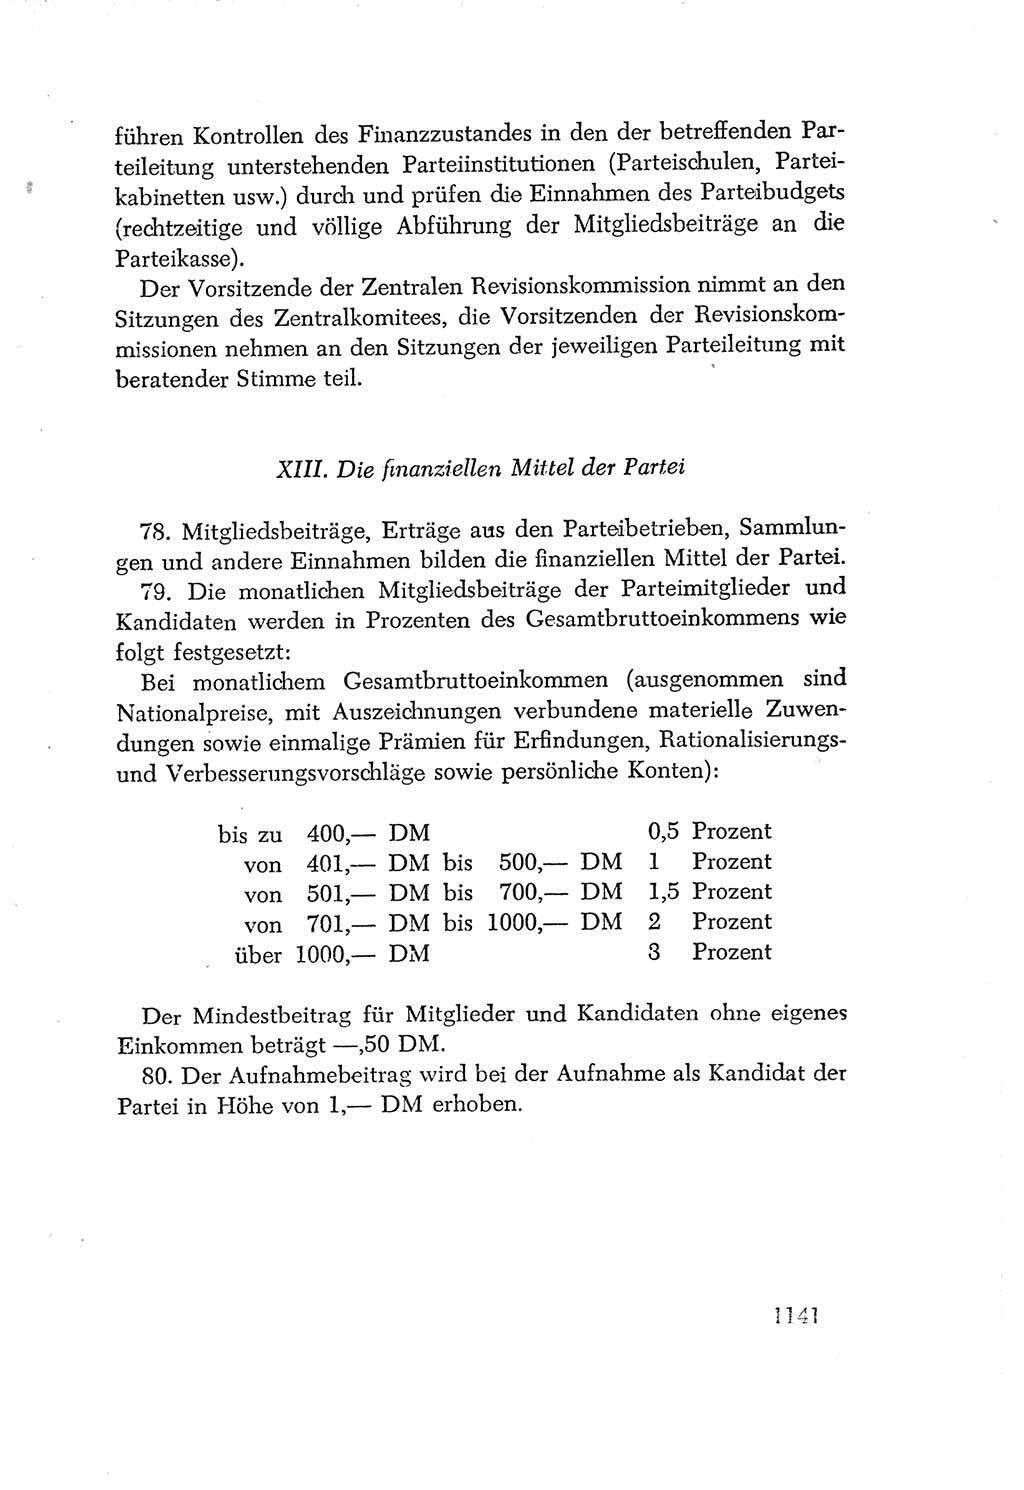 Protokoll der Verhandlungen des Ⅳ. Parteitages der Sozialistischen Einheitspartei Deutschlands (SED) [Deutsche Demokratische Republik (DDR)] 1954, Seite 1141